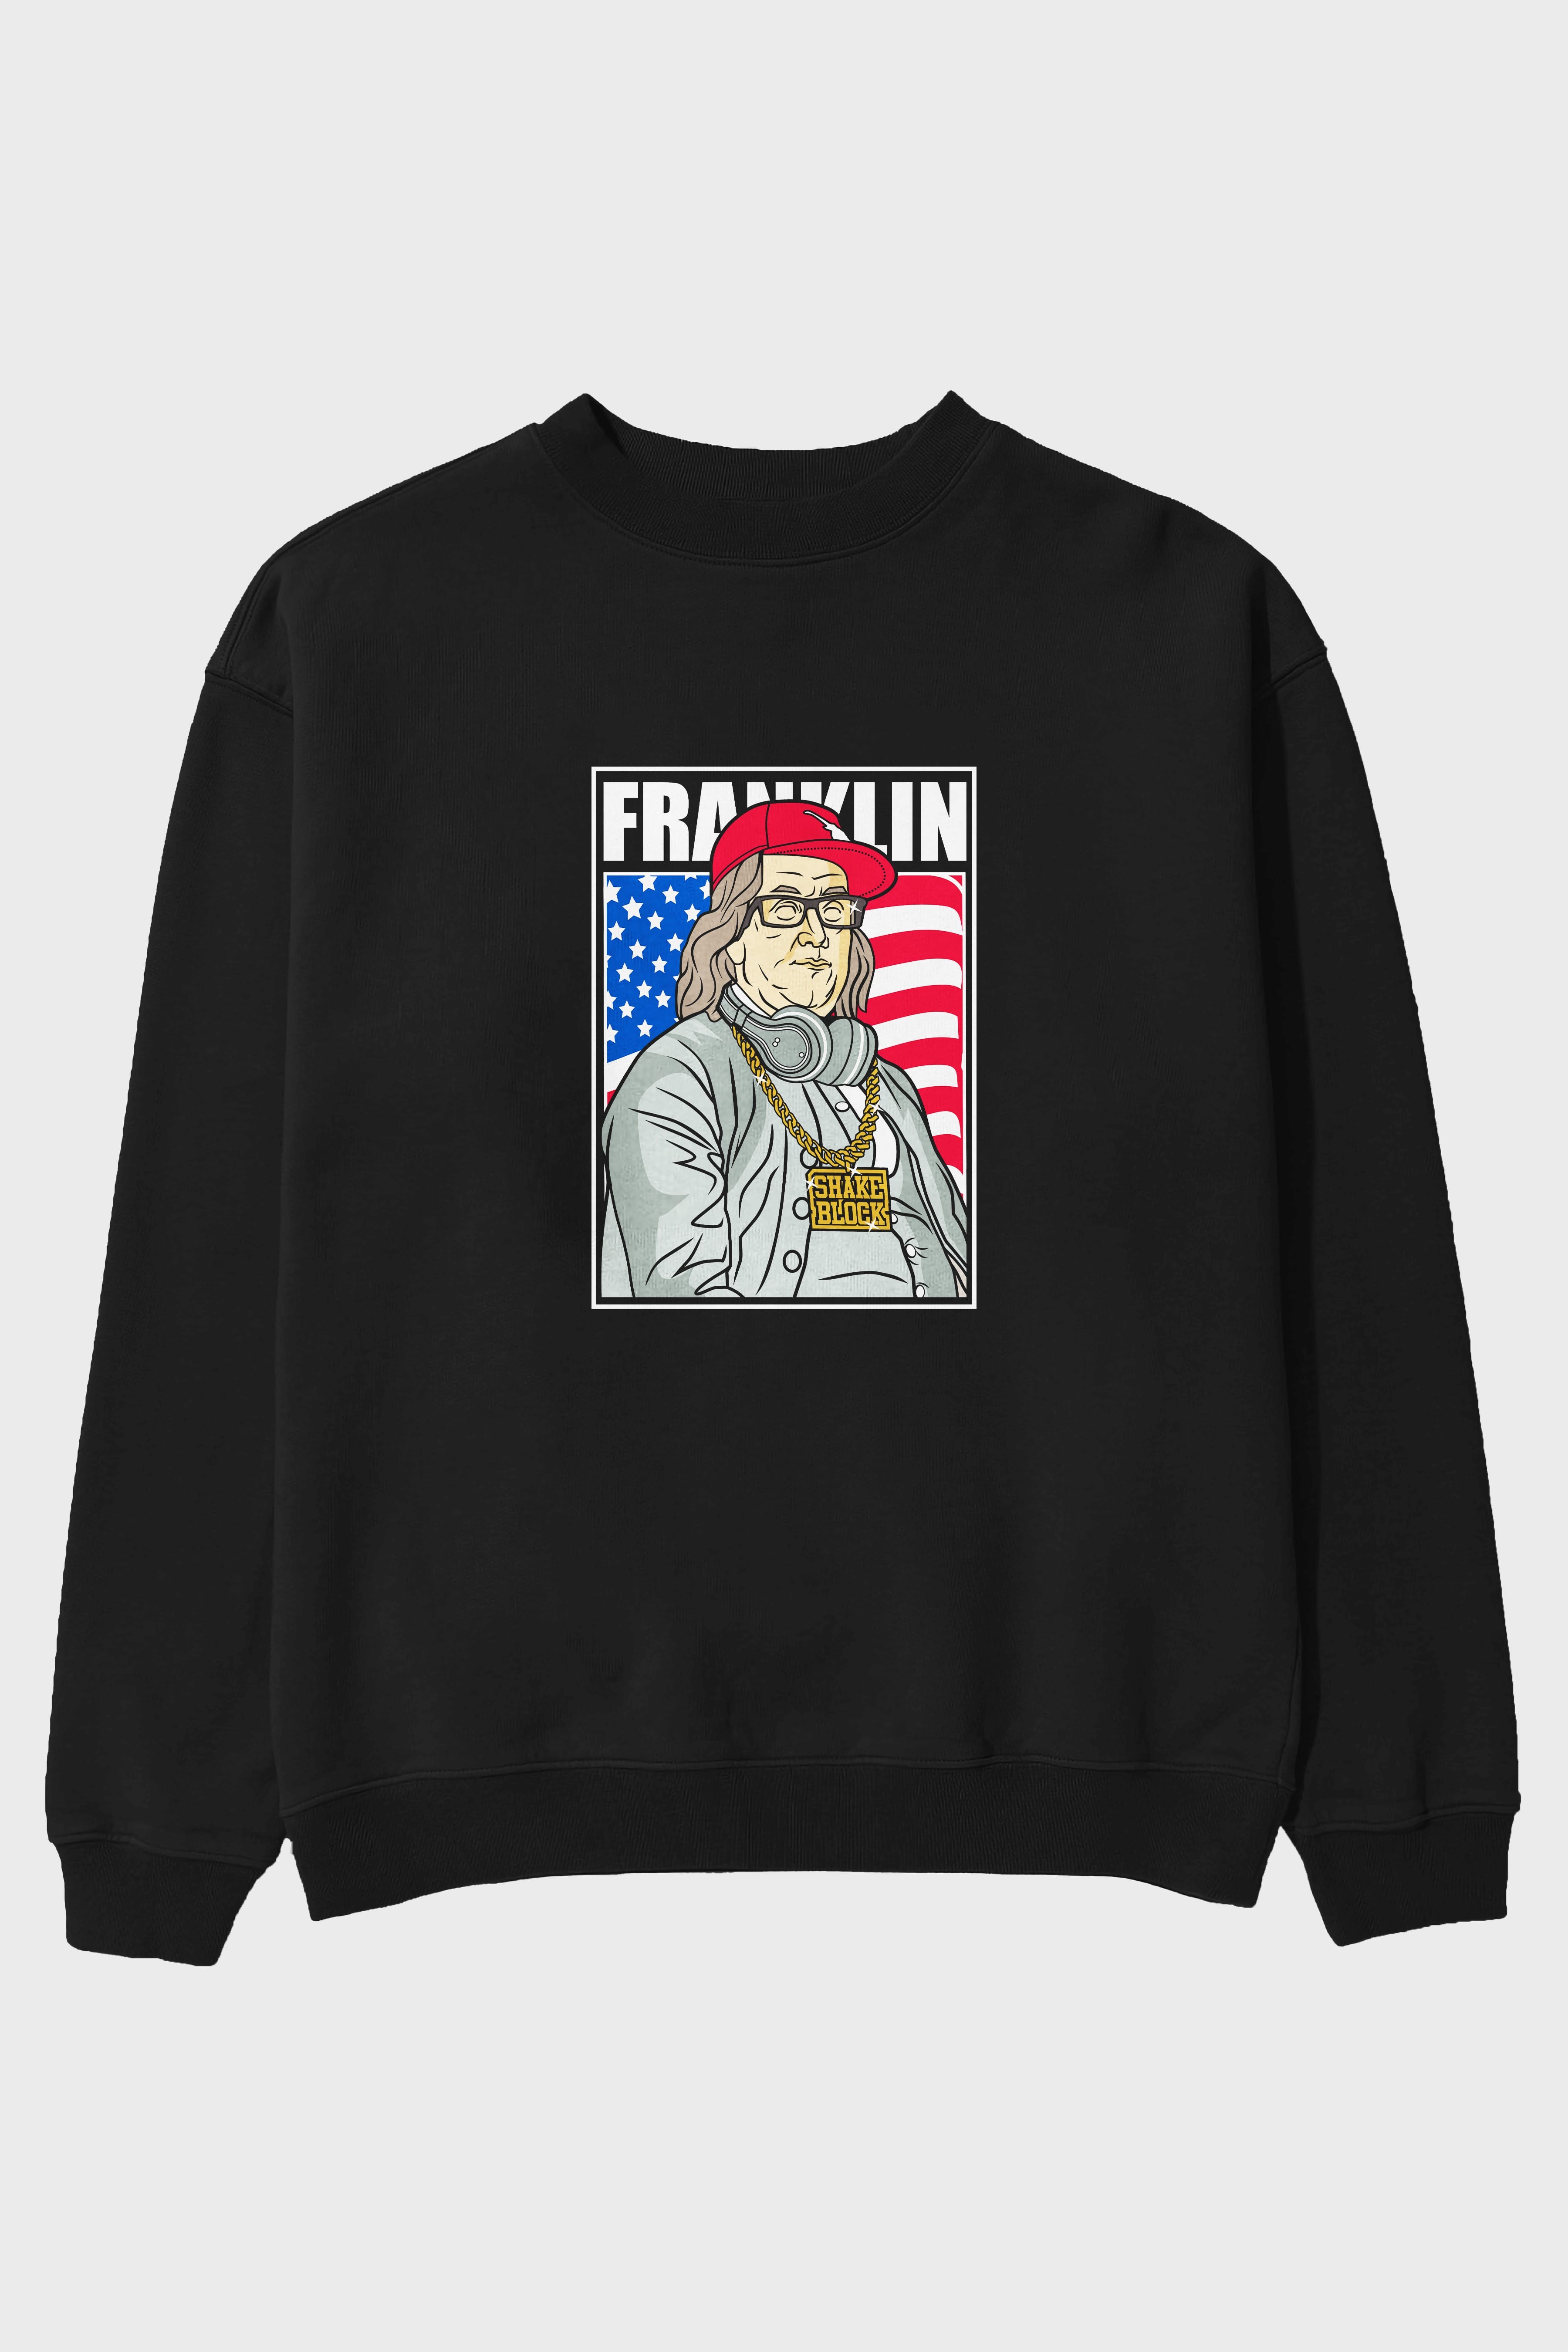 Franklin Rapper Ön Baskılı Oversize Sweatshirt Erkek Kadın Unisex